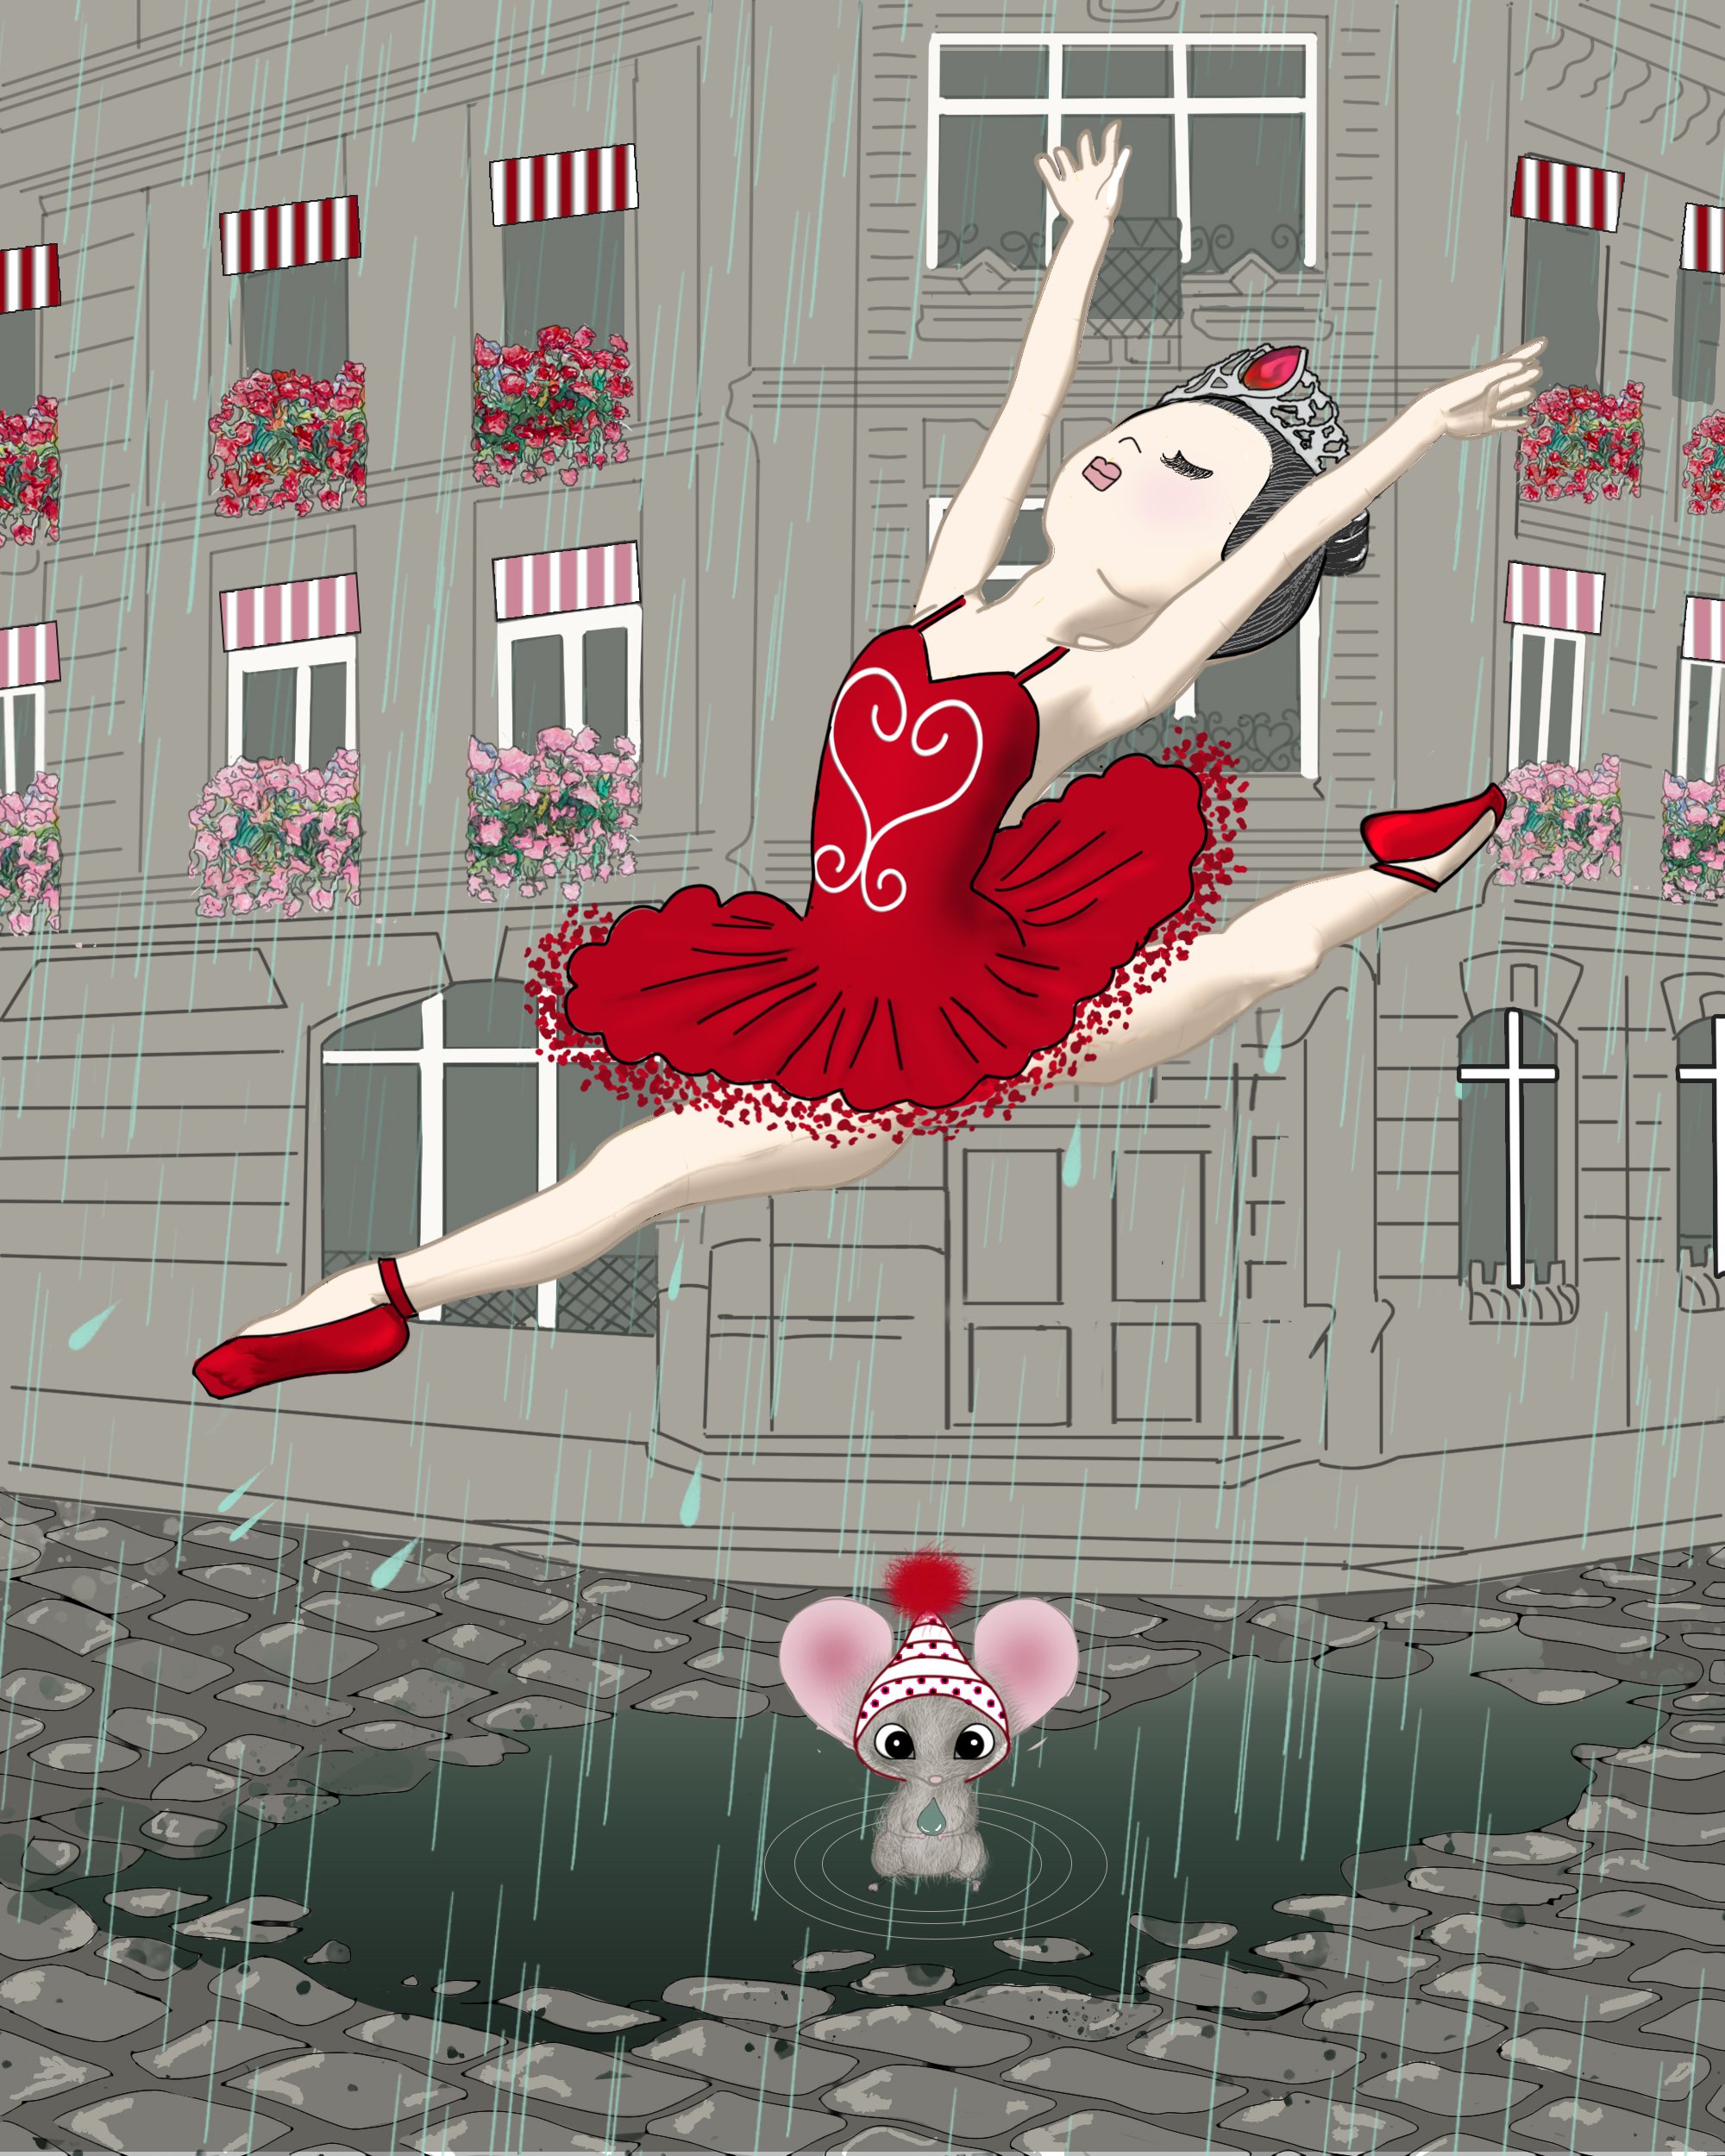 cbkids_illustration_ballerina_red_tutu_rain_mouse_v3_revised_leg_bkgd_light.jpg